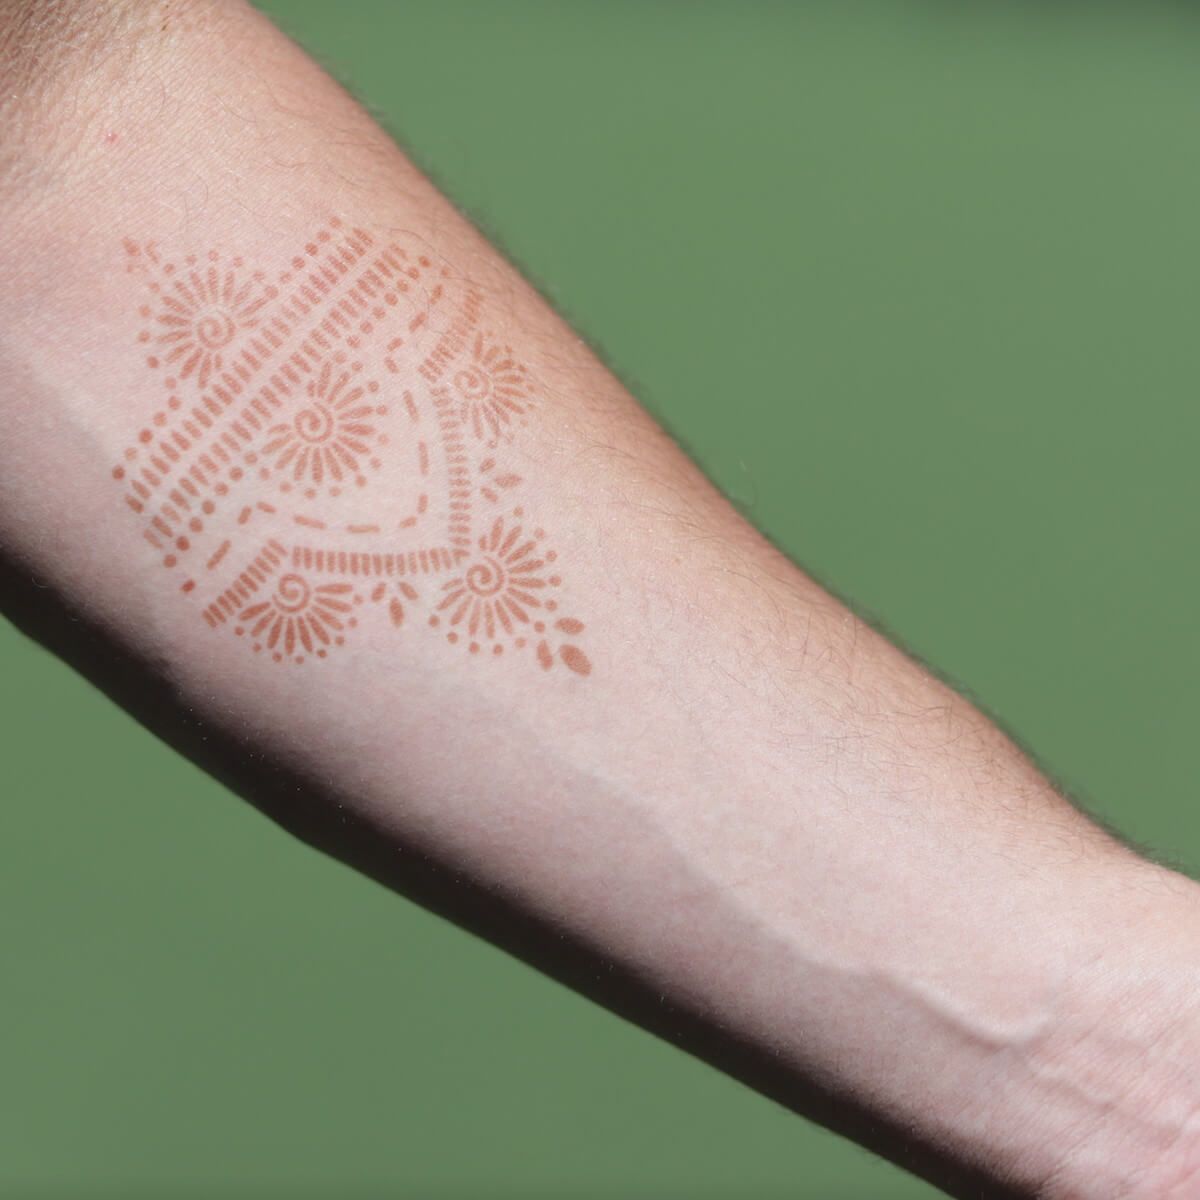 Dahlia - men's henna tattoo on inner arm